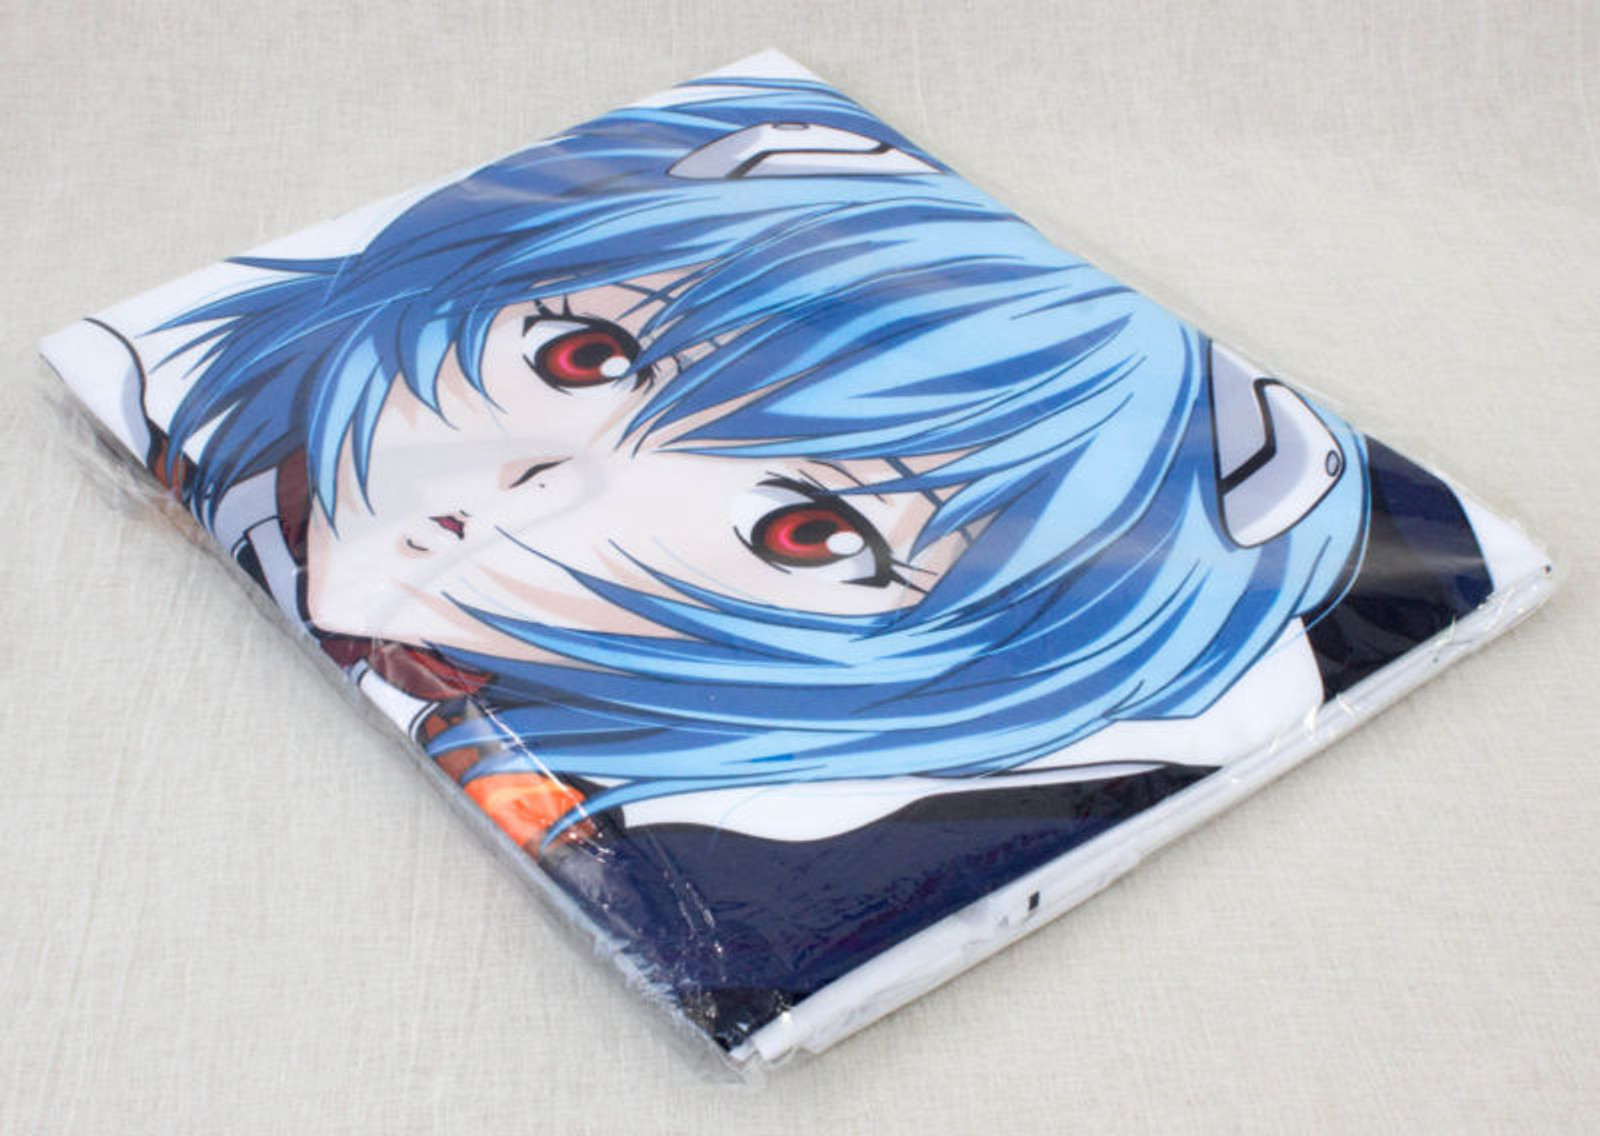 Evangelion Rei Ayanami Lying Bed Sheet 200cmx110cm SEGA JAPAN ANIME MANGA